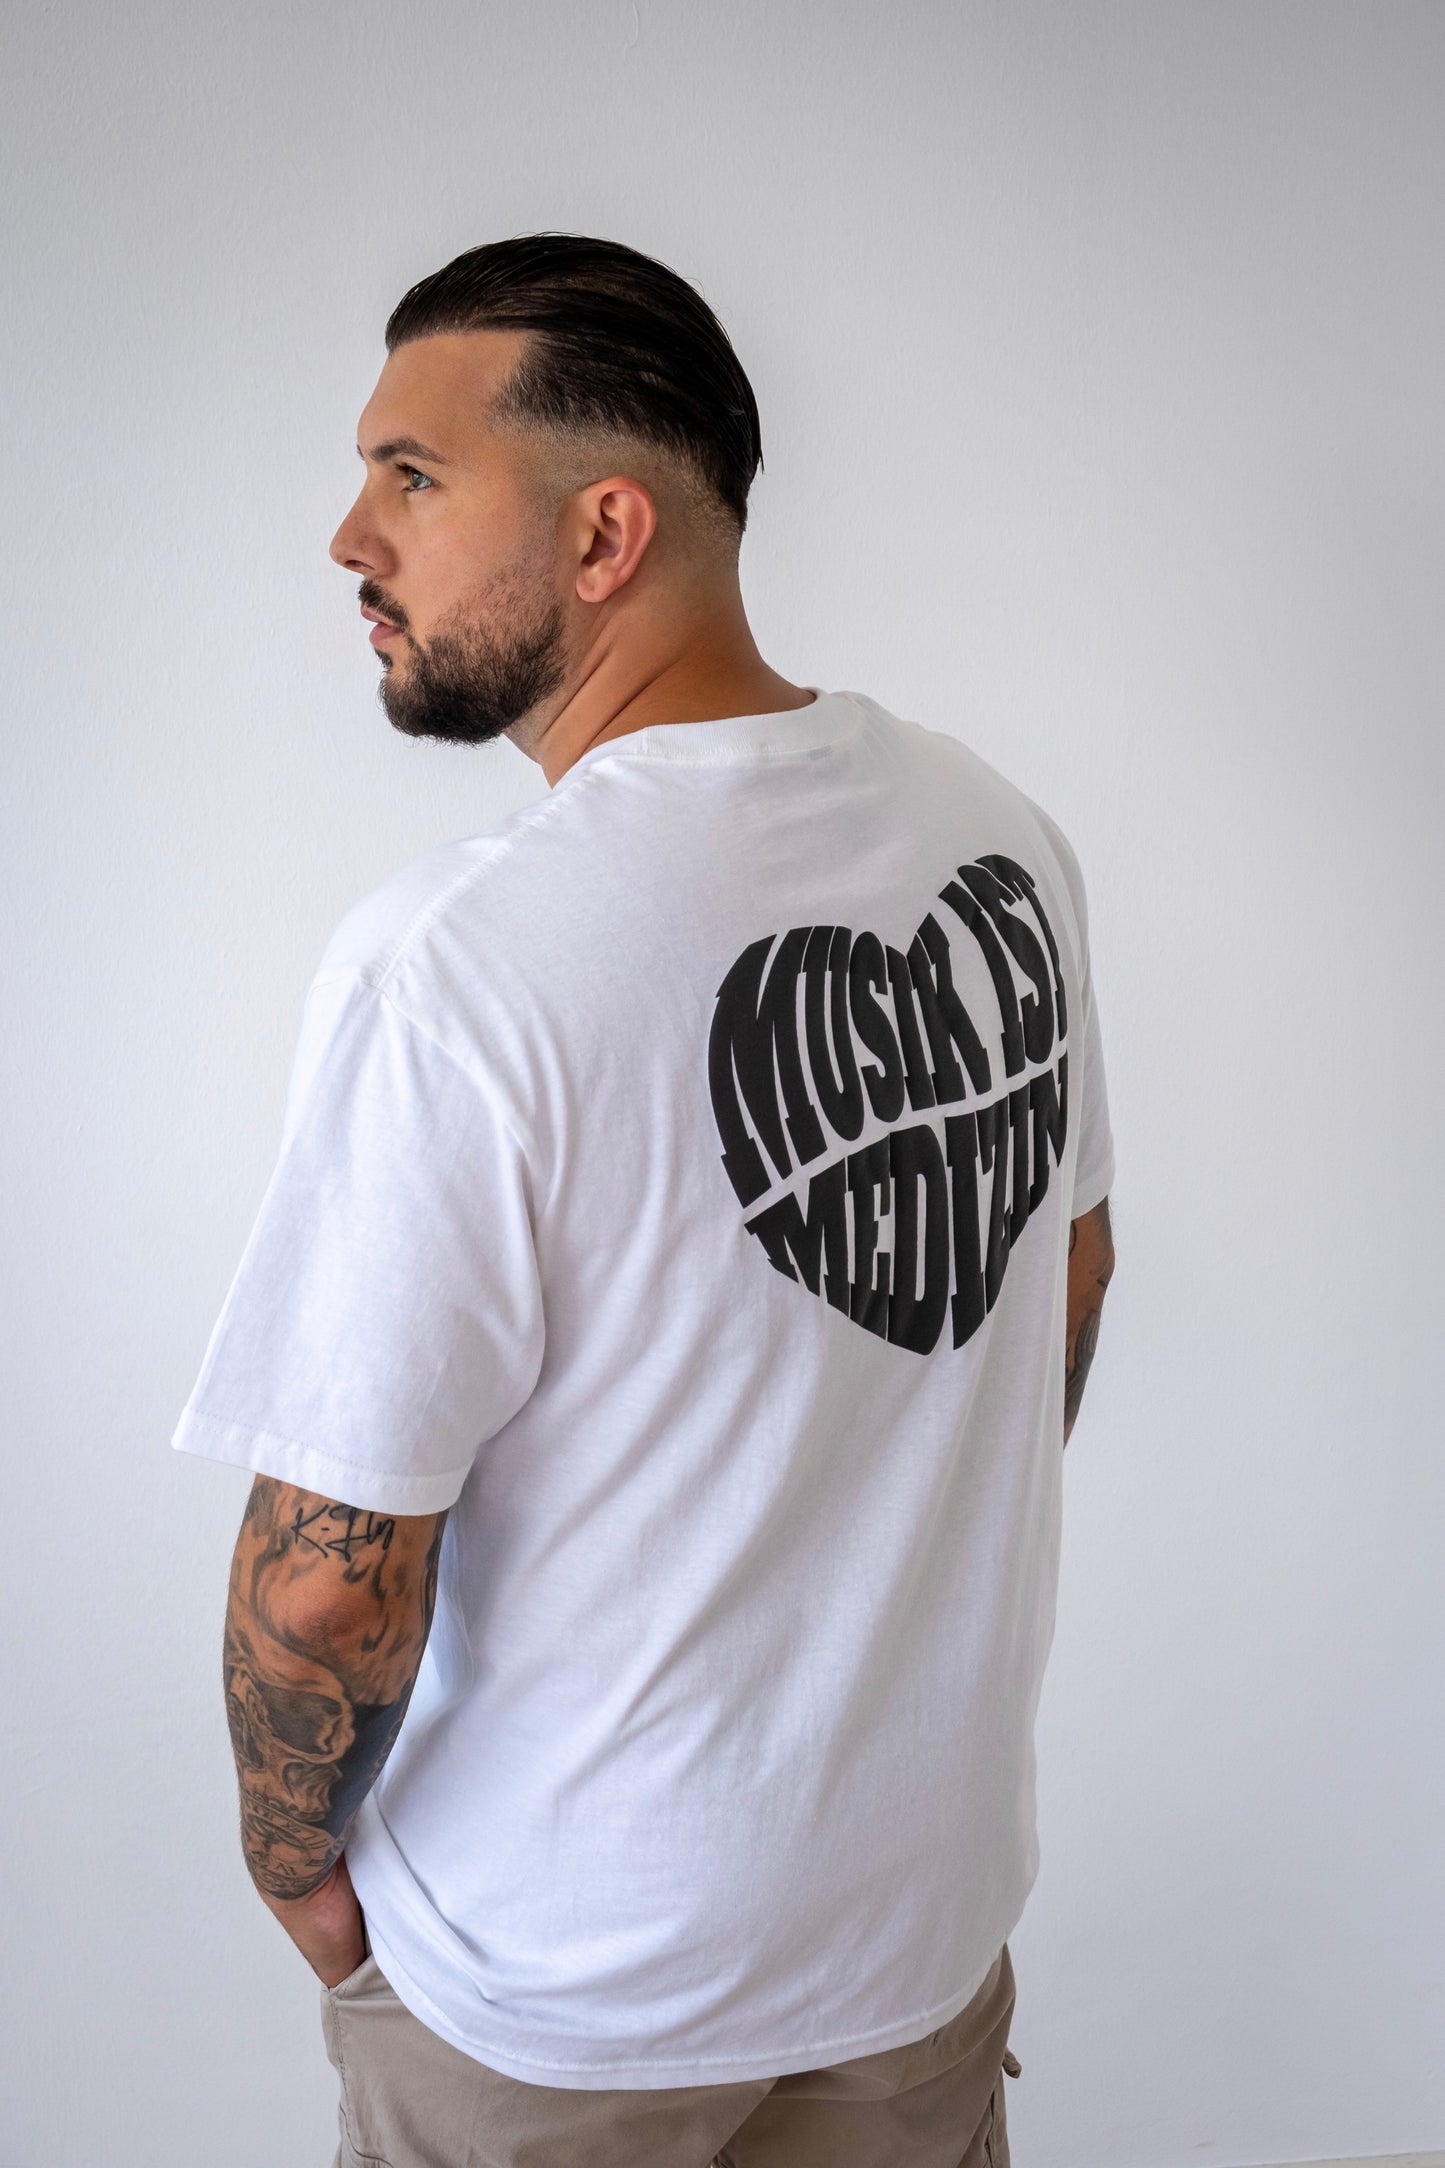 K-Fly "Musik ist Medizin" T-Shirt